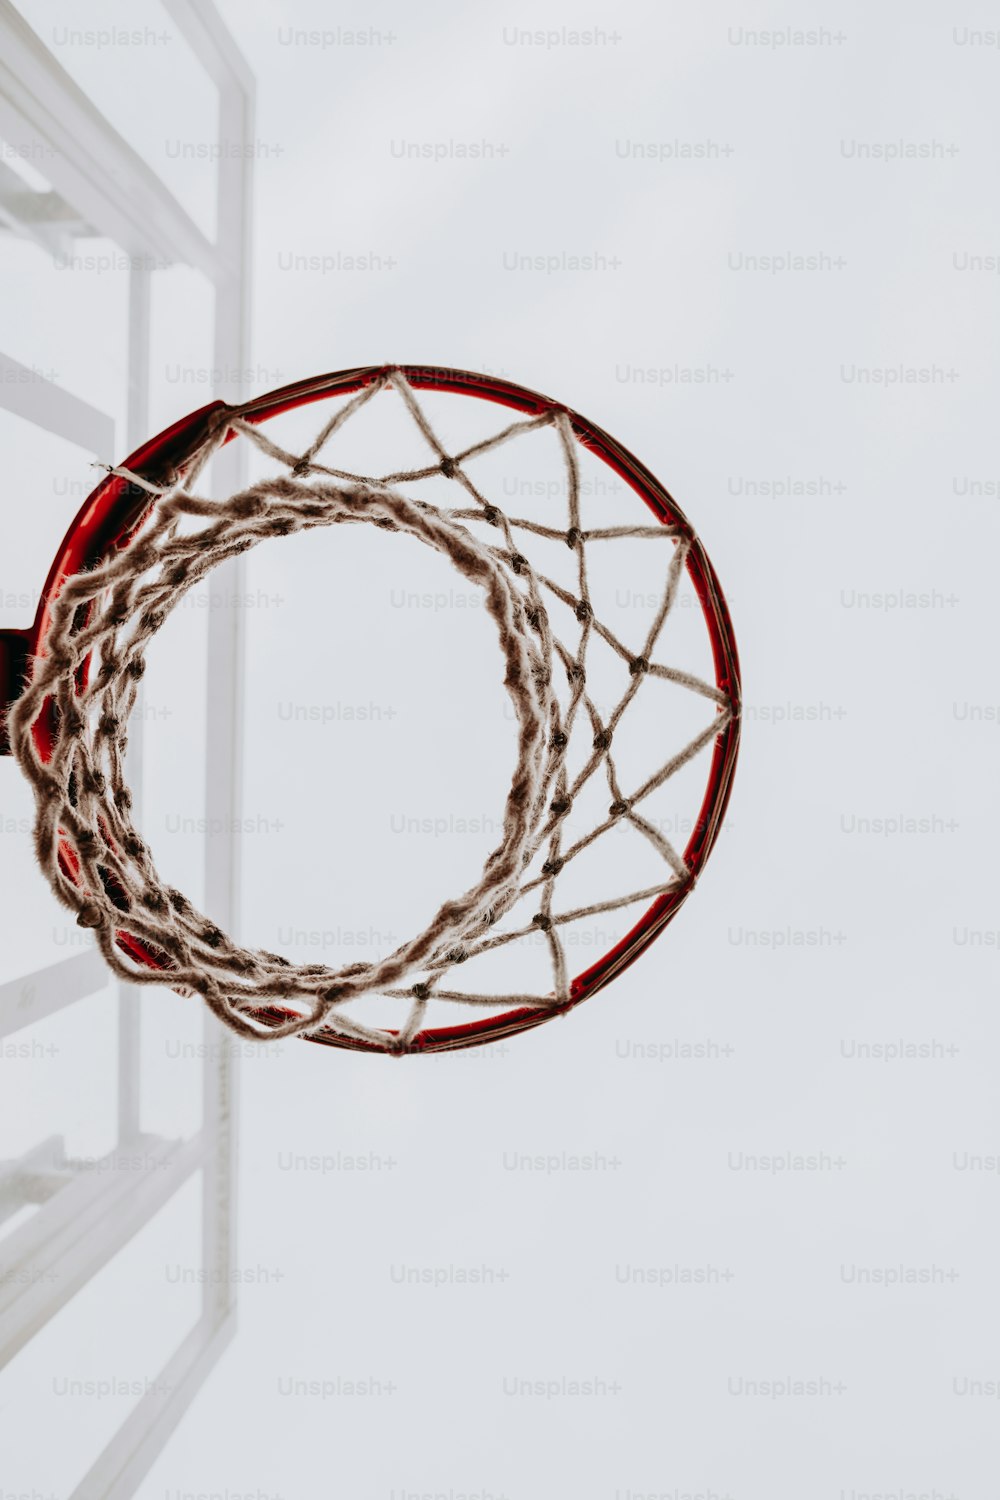 500+ Basket Pictures  Download Free Images on Unsplash